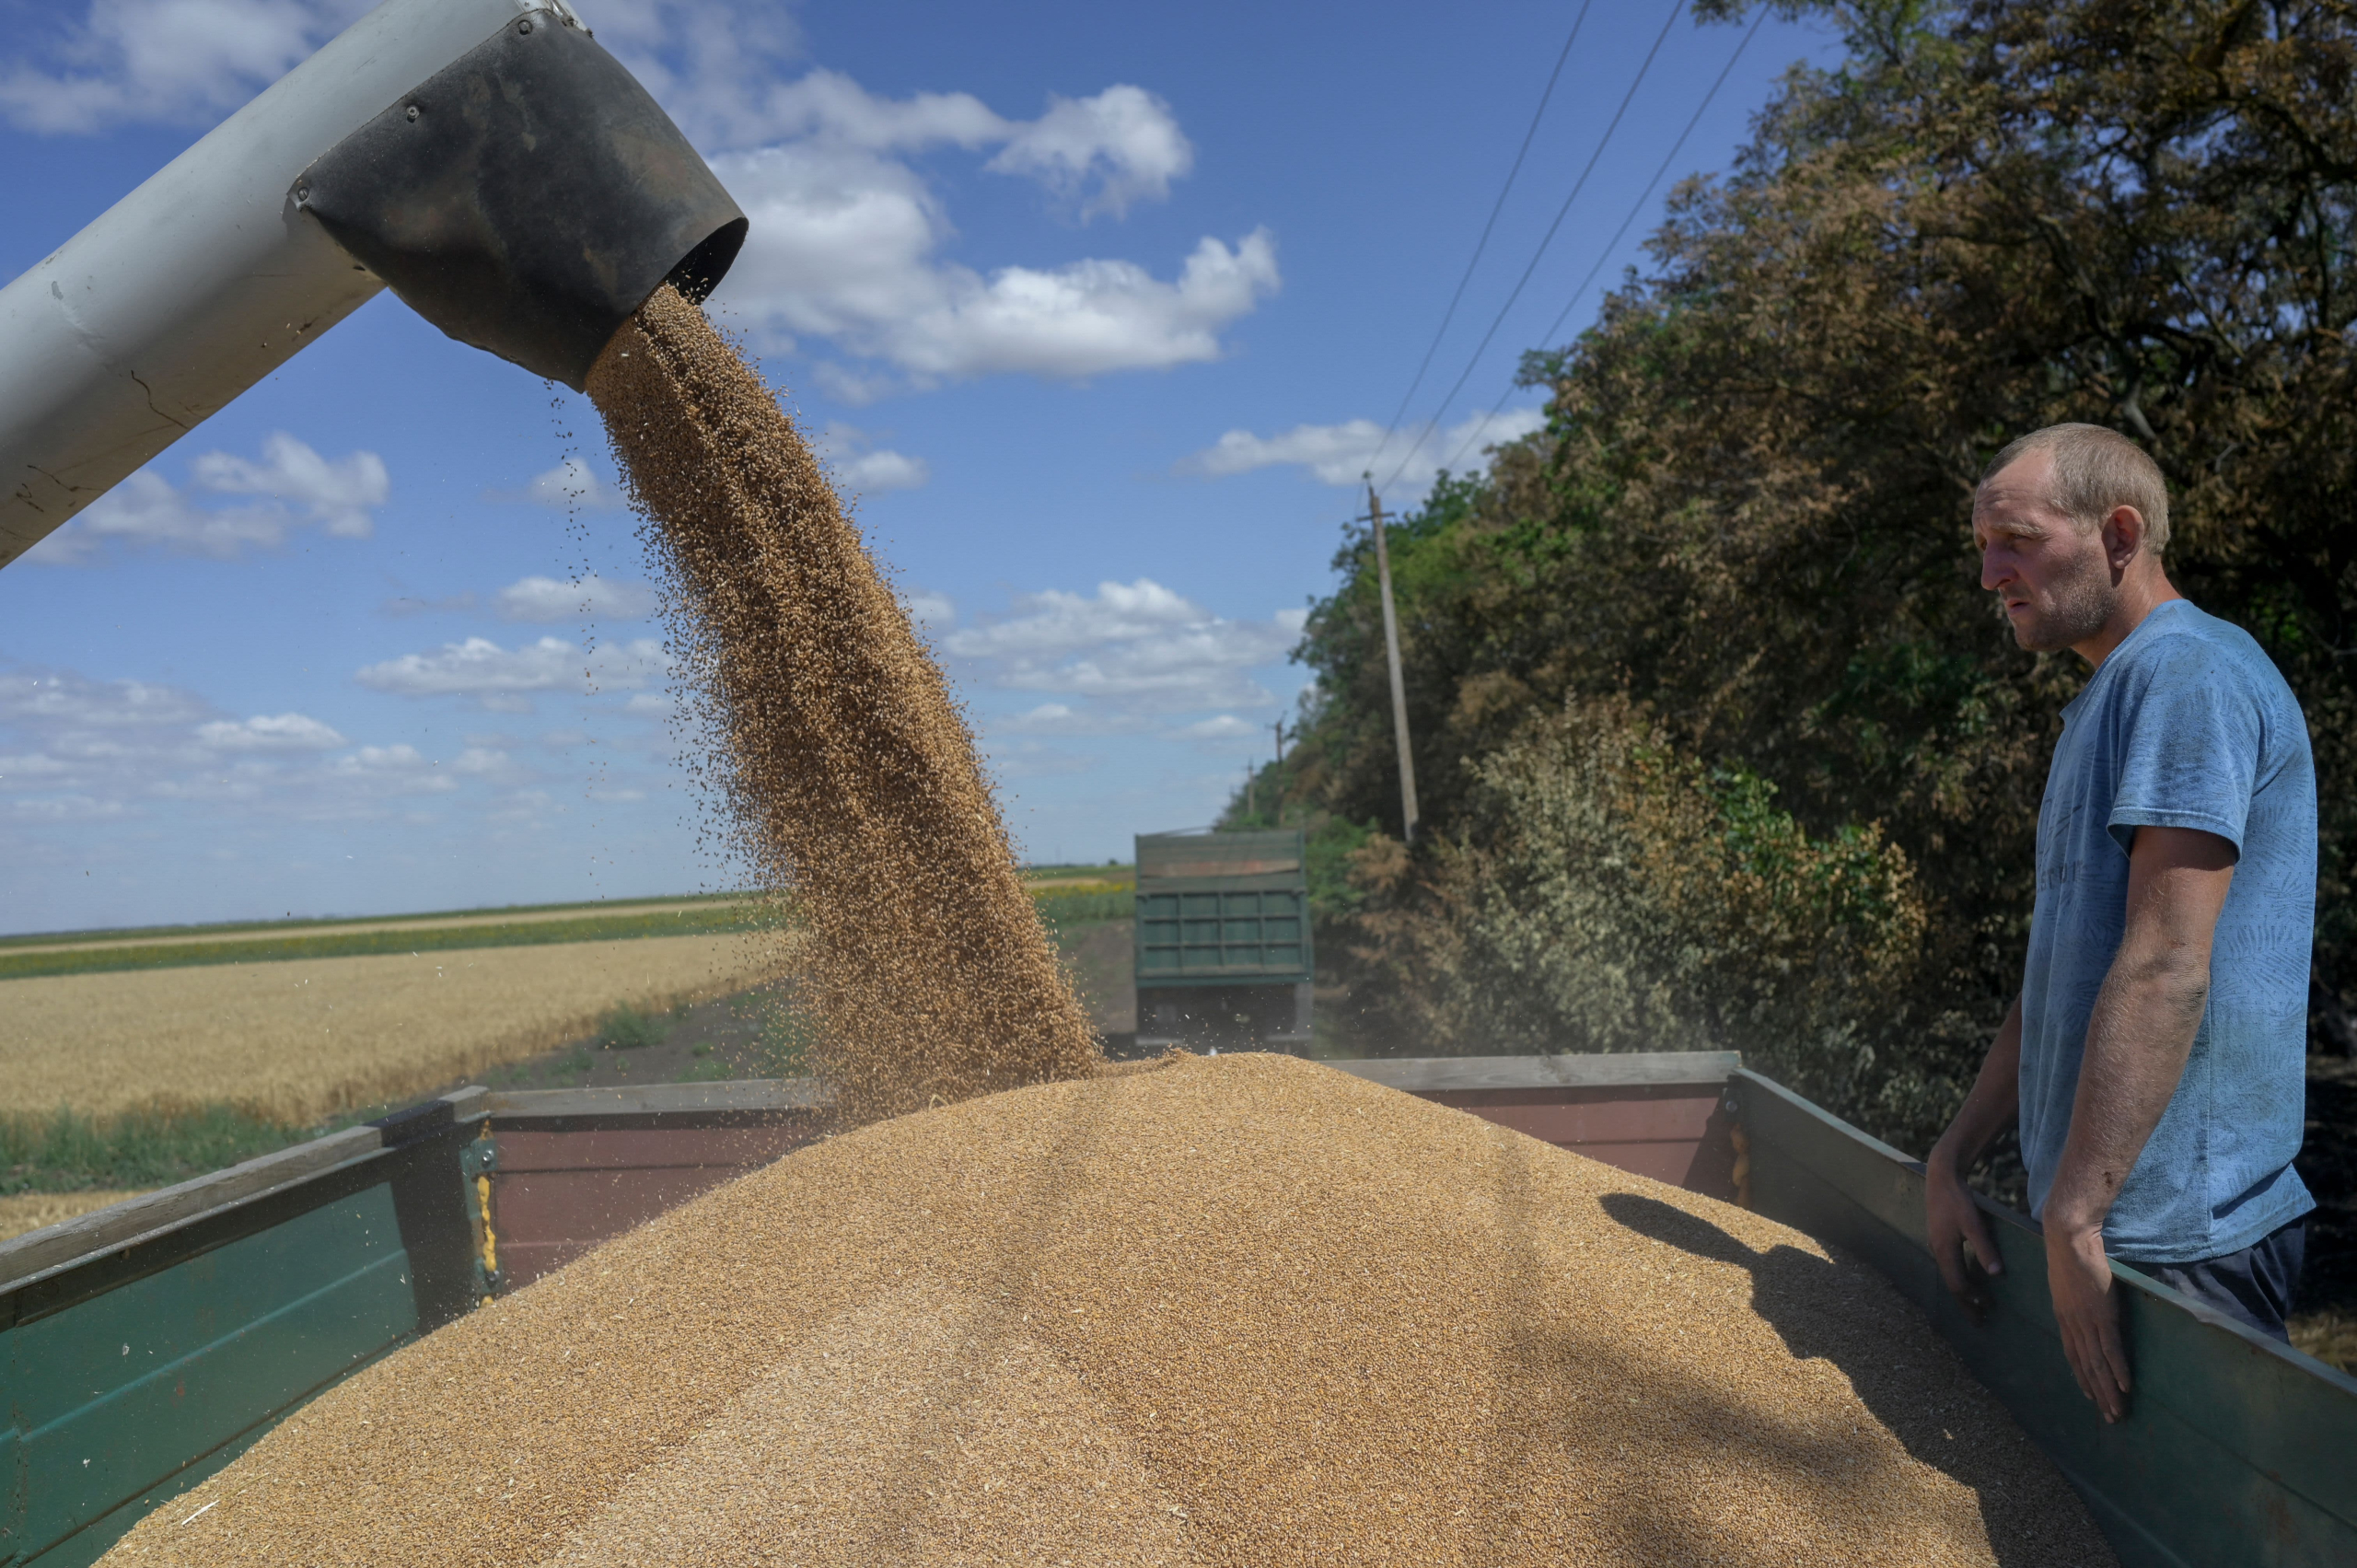 واردات القمح الروسي للمغرب تتجاوز 3 ملايين طن والأرجنتين تدخل المنافسة